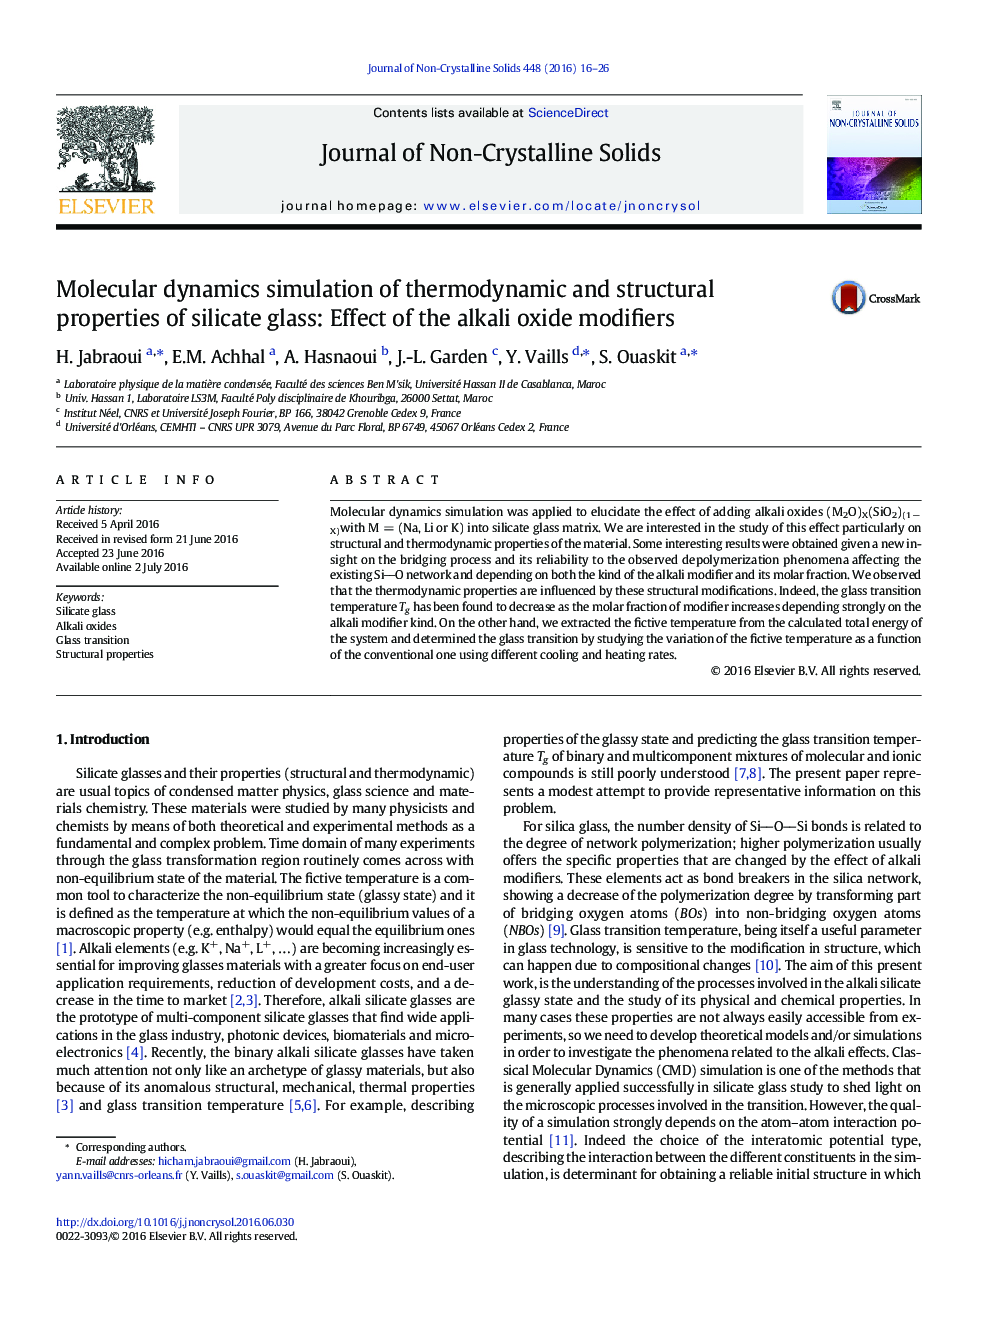 شبیه سازی پوسته مولکولی خواص ترمودینامیکی و ساختاری شیشه های سیلیکات: اثر اصلاح کننده های اکسید قلیایی 